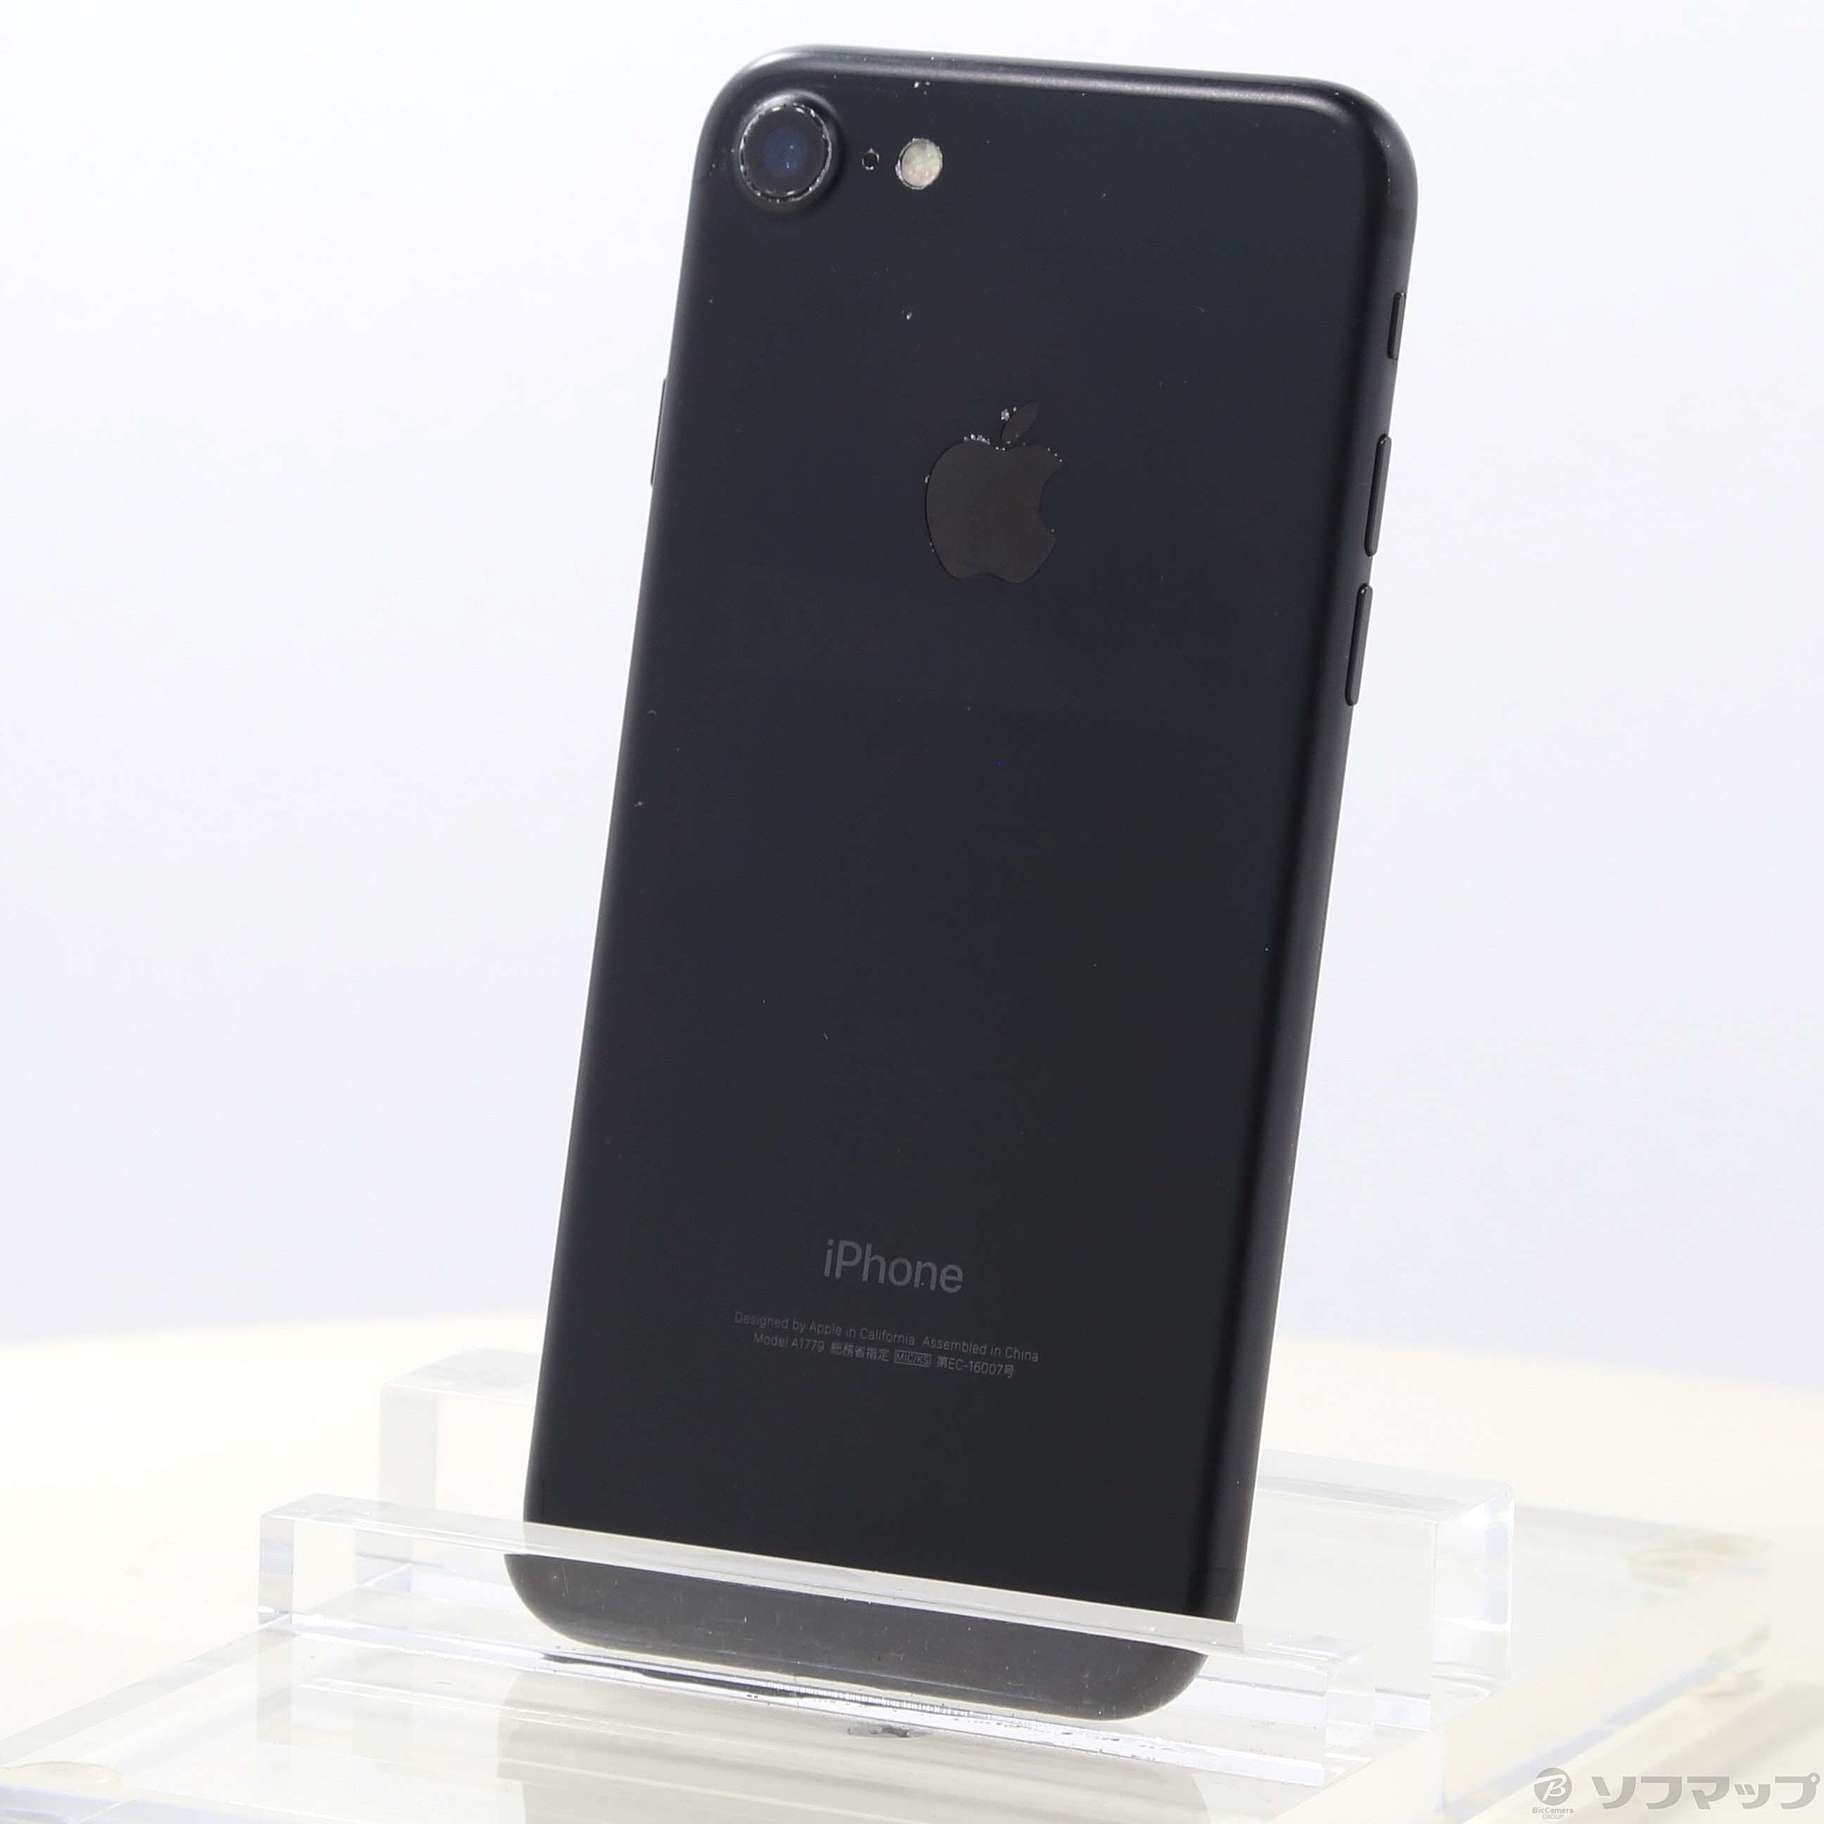 【SIMフリー】iPhone7 32GB ブラック